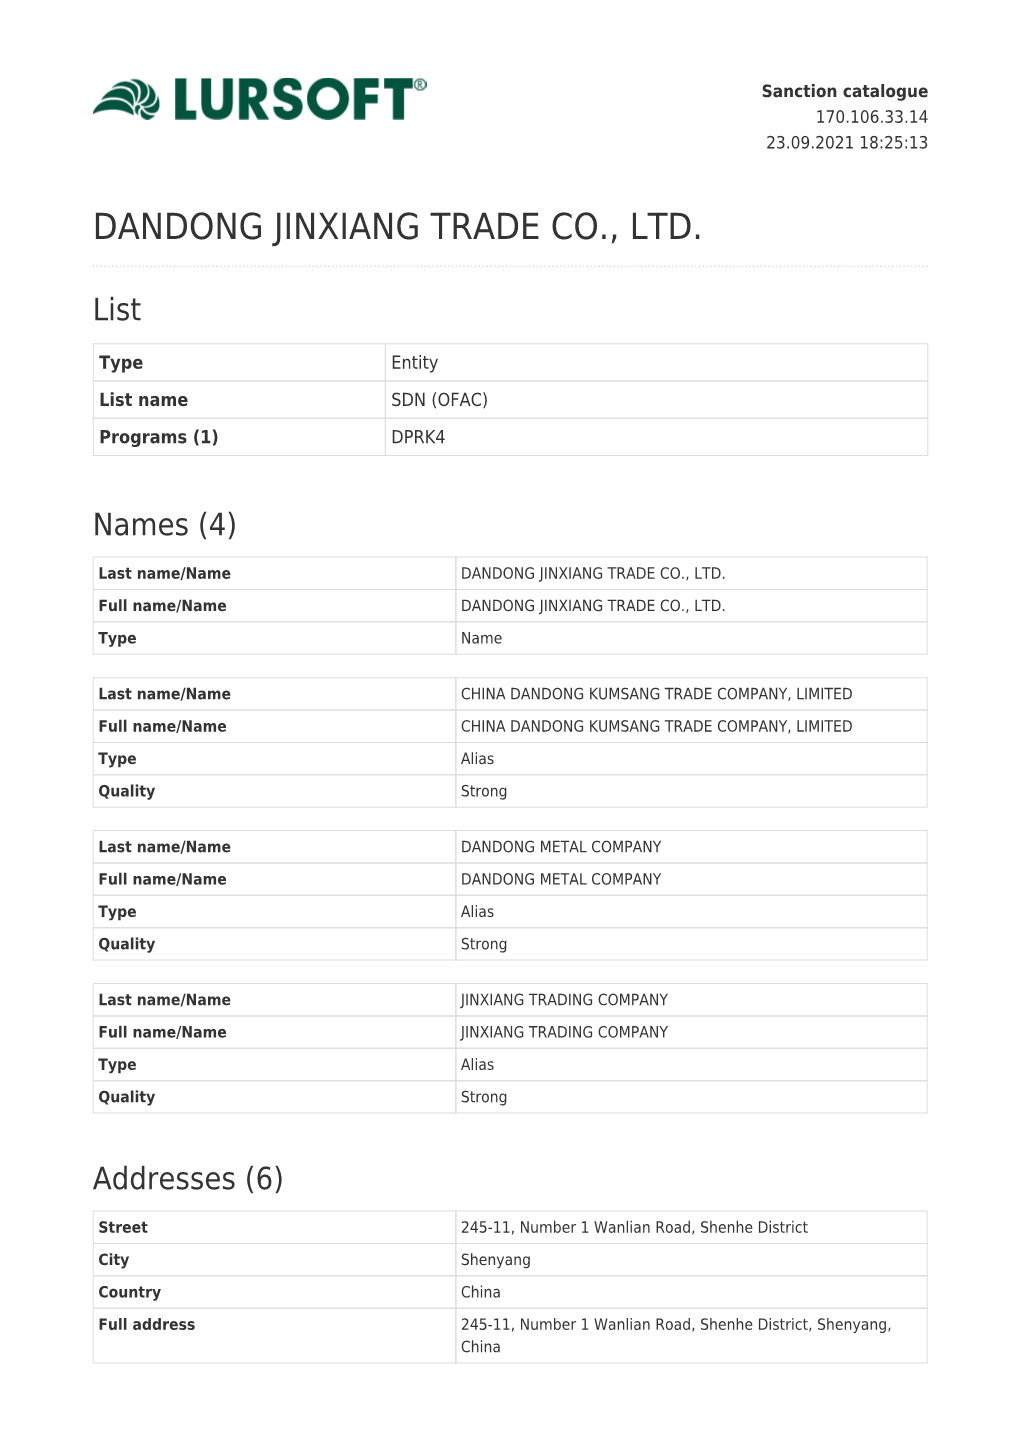 Dandong Jinxiang Trade Co., Ltd